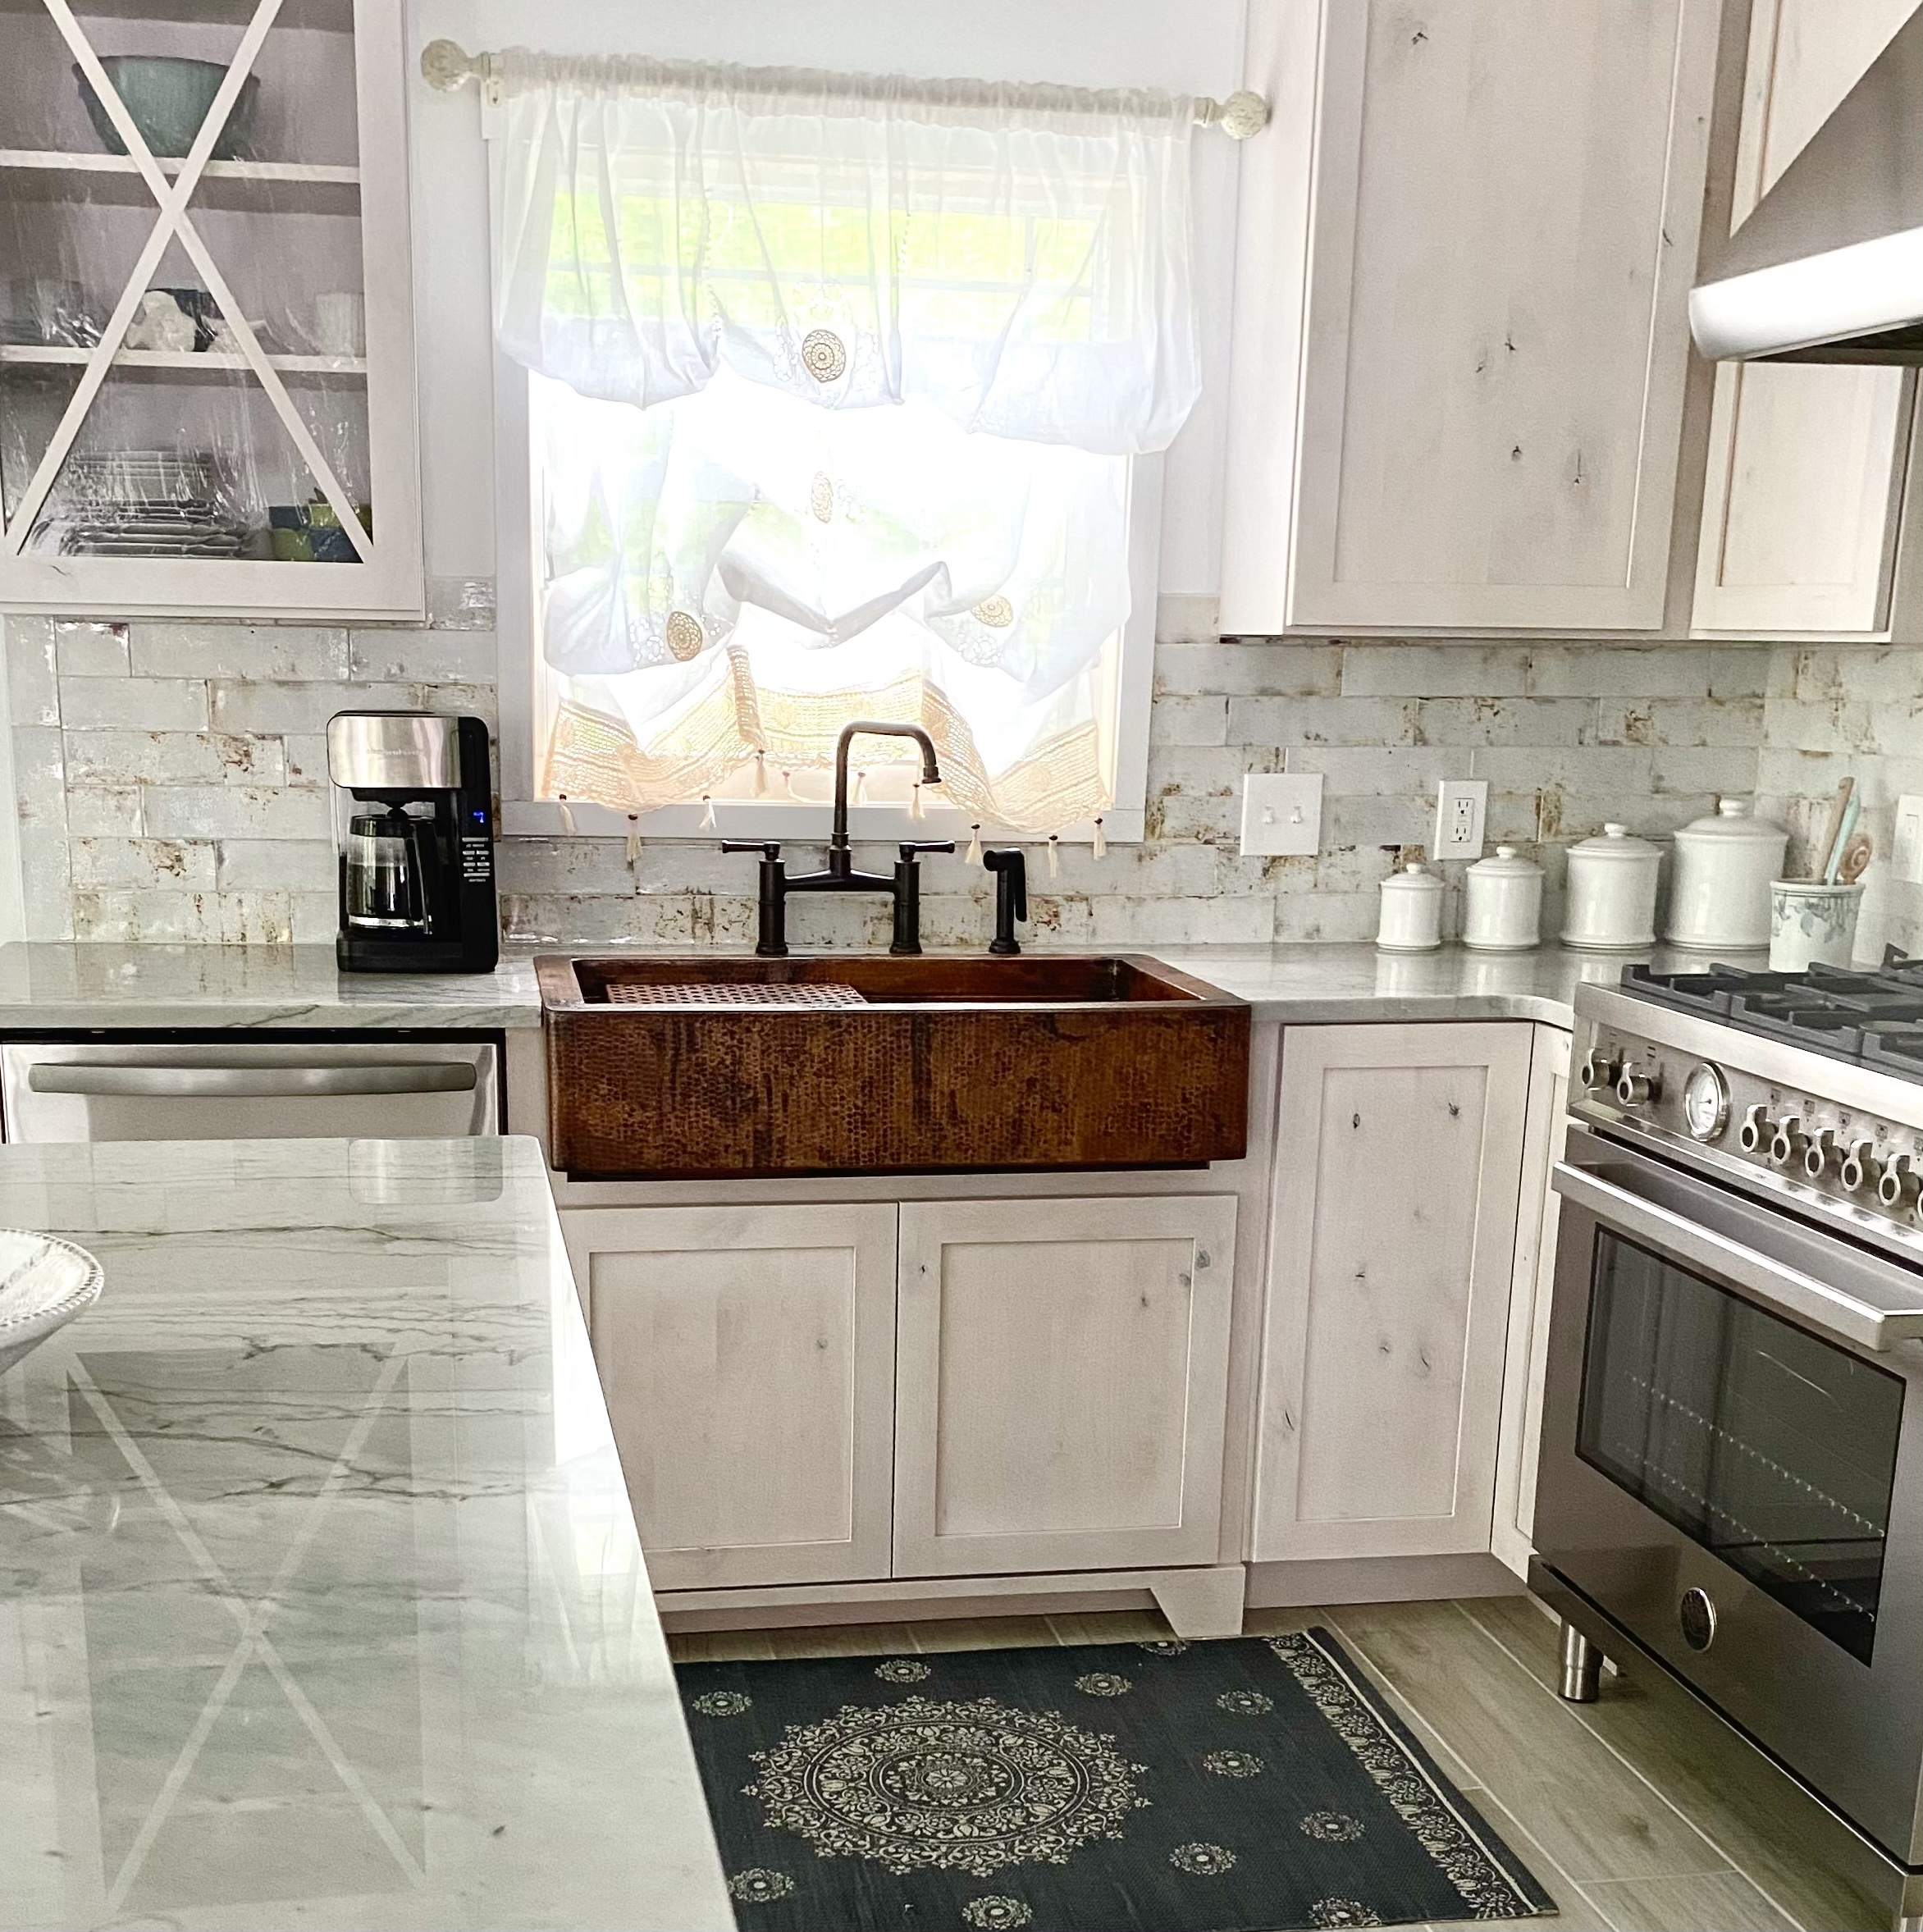 Imposing coastal kitchen with white kitchen cabinets, marble kitchen countertops, a stylish range hood, captivating brick backsplash